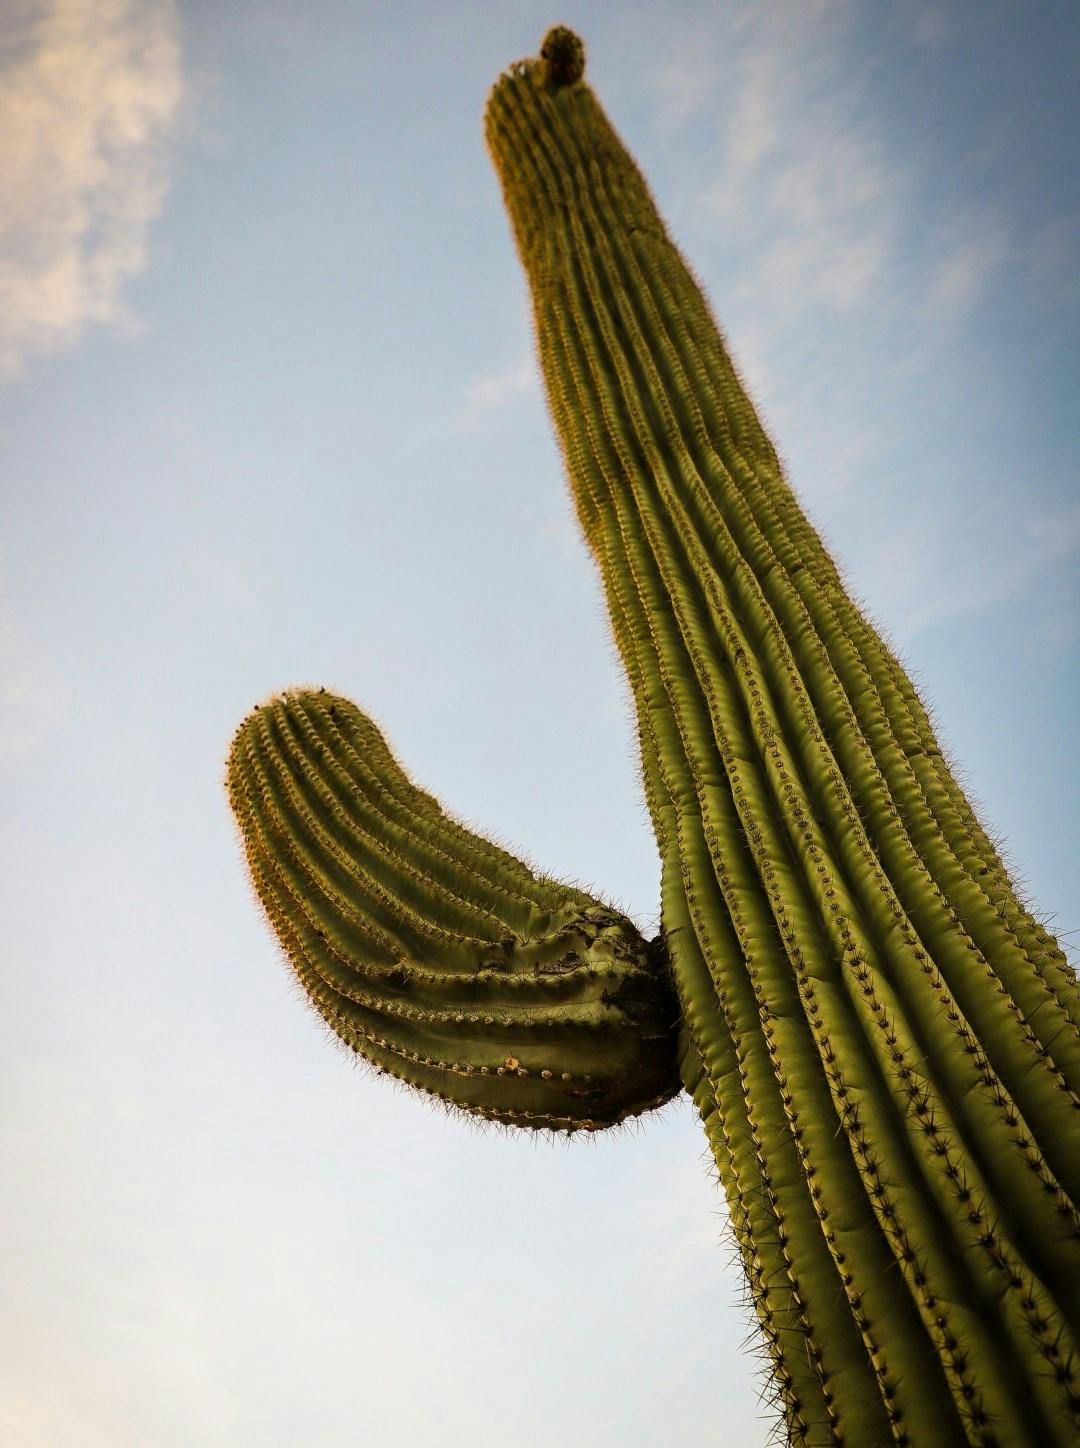 A cactus in Tucson